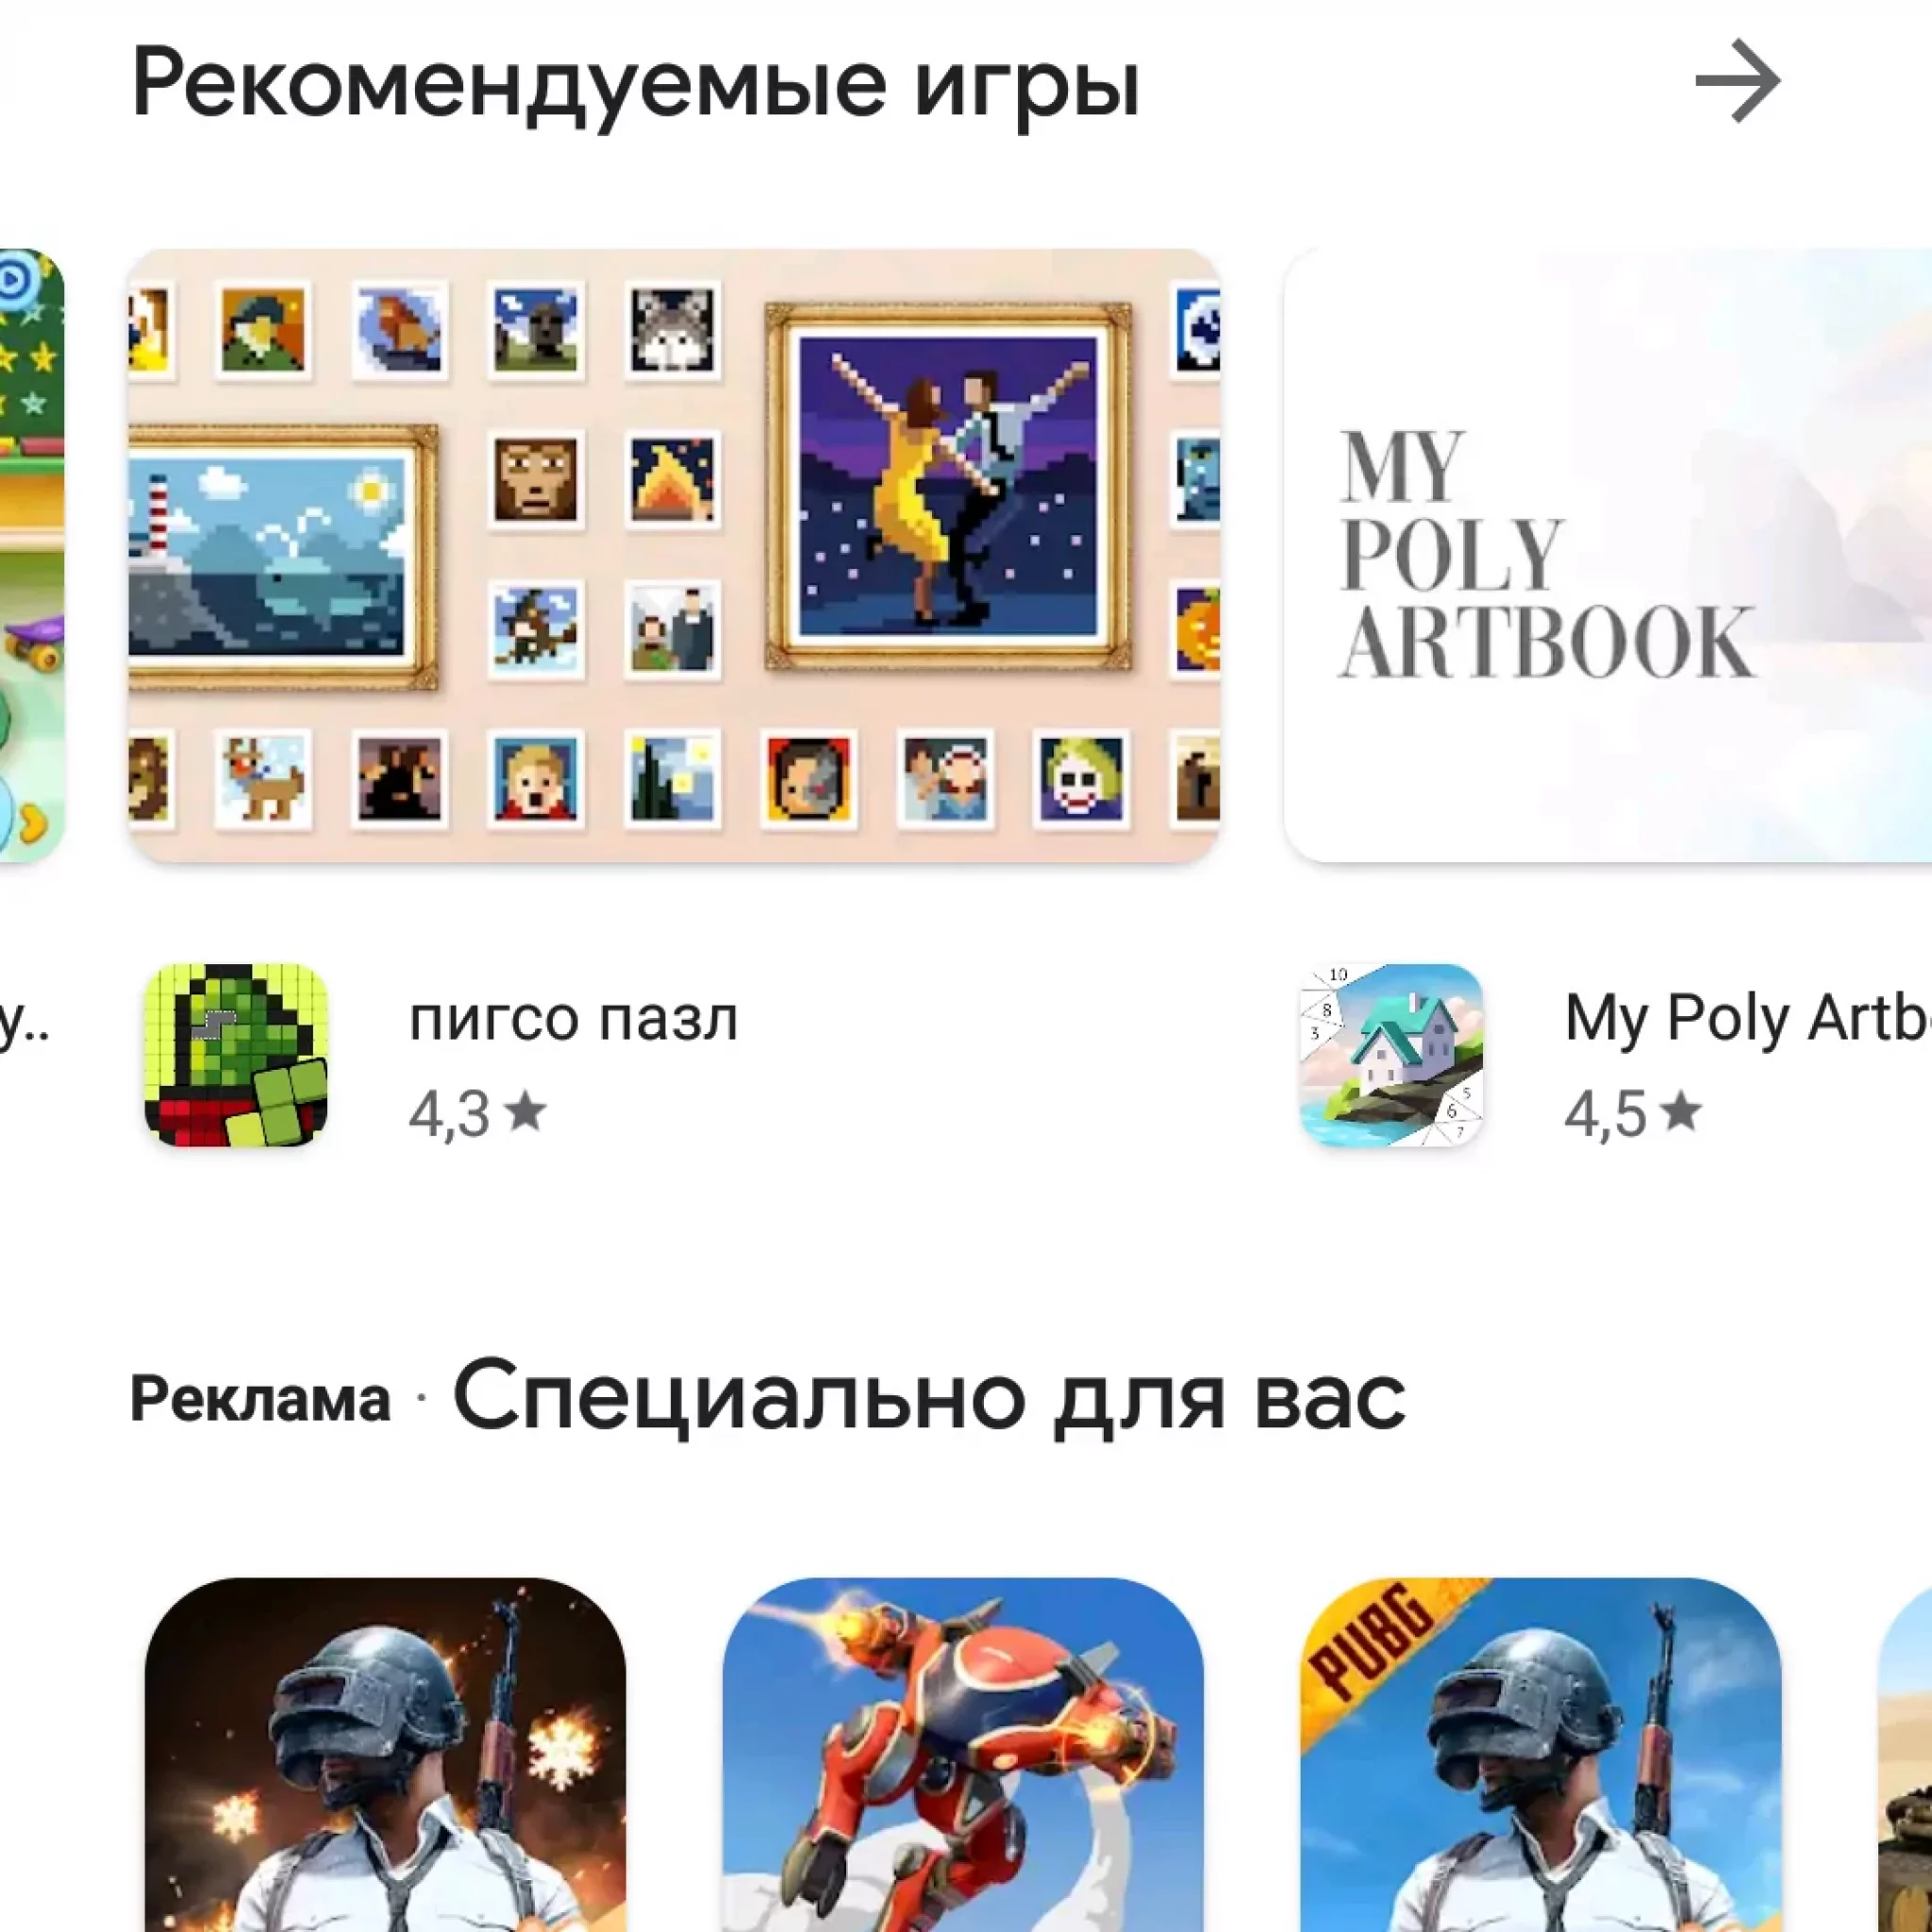 Как закачать телеграмм на телефон на русском языке бесплатно и полностью скачать на андроид фото 106